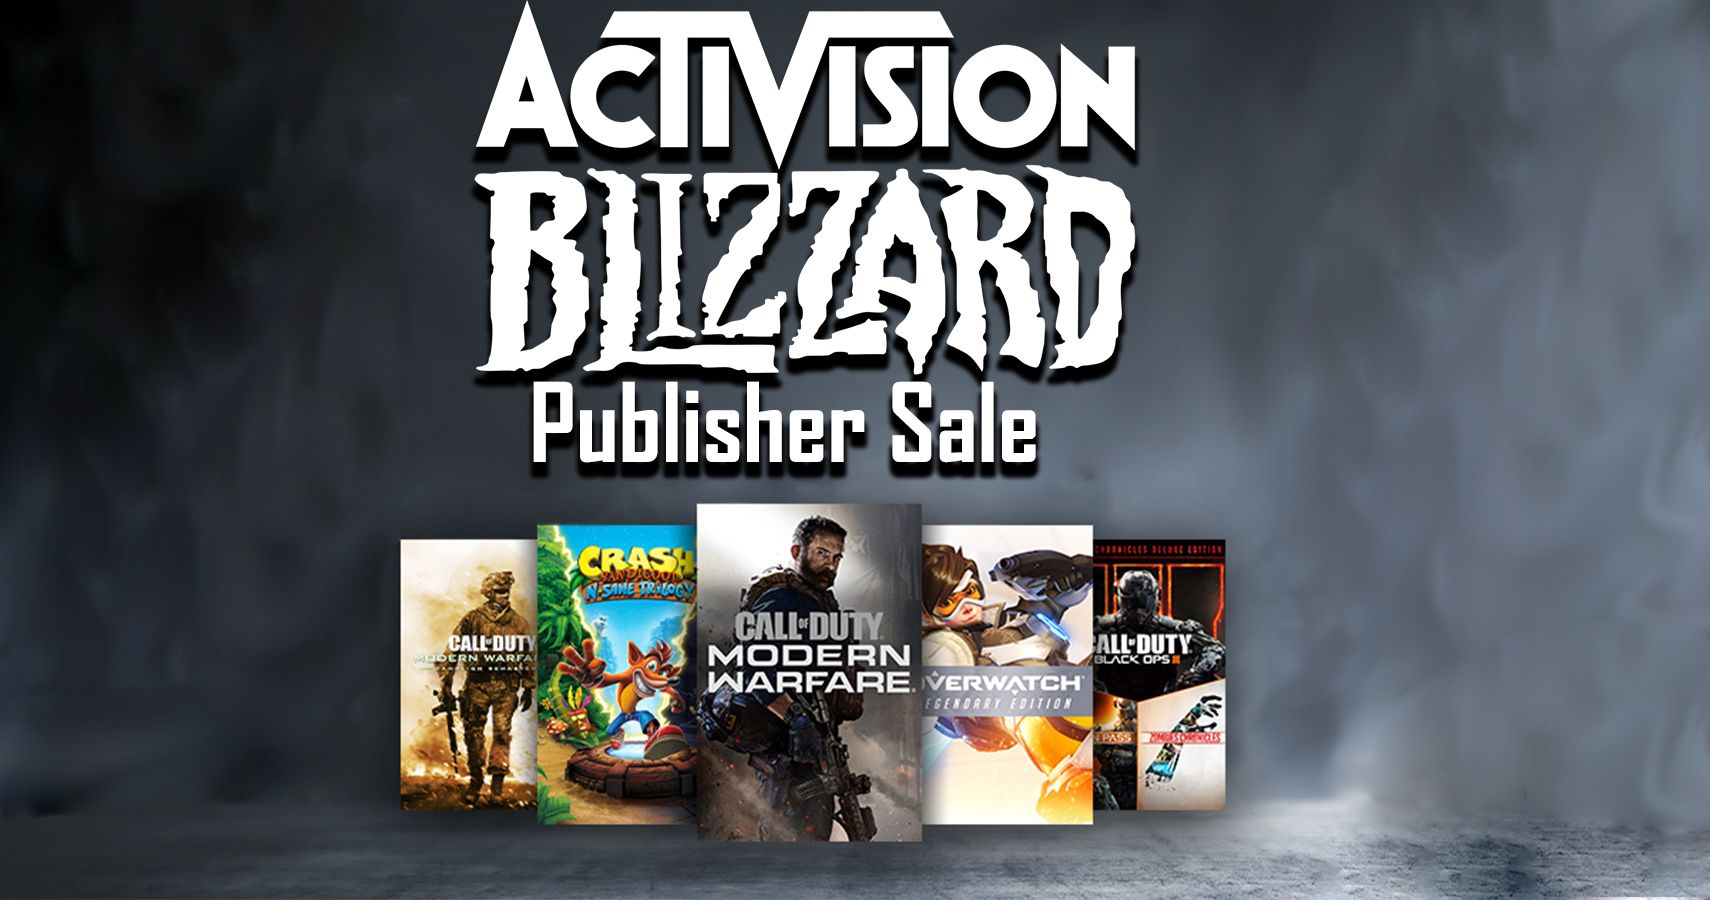 Activision Blizzard publisher sale